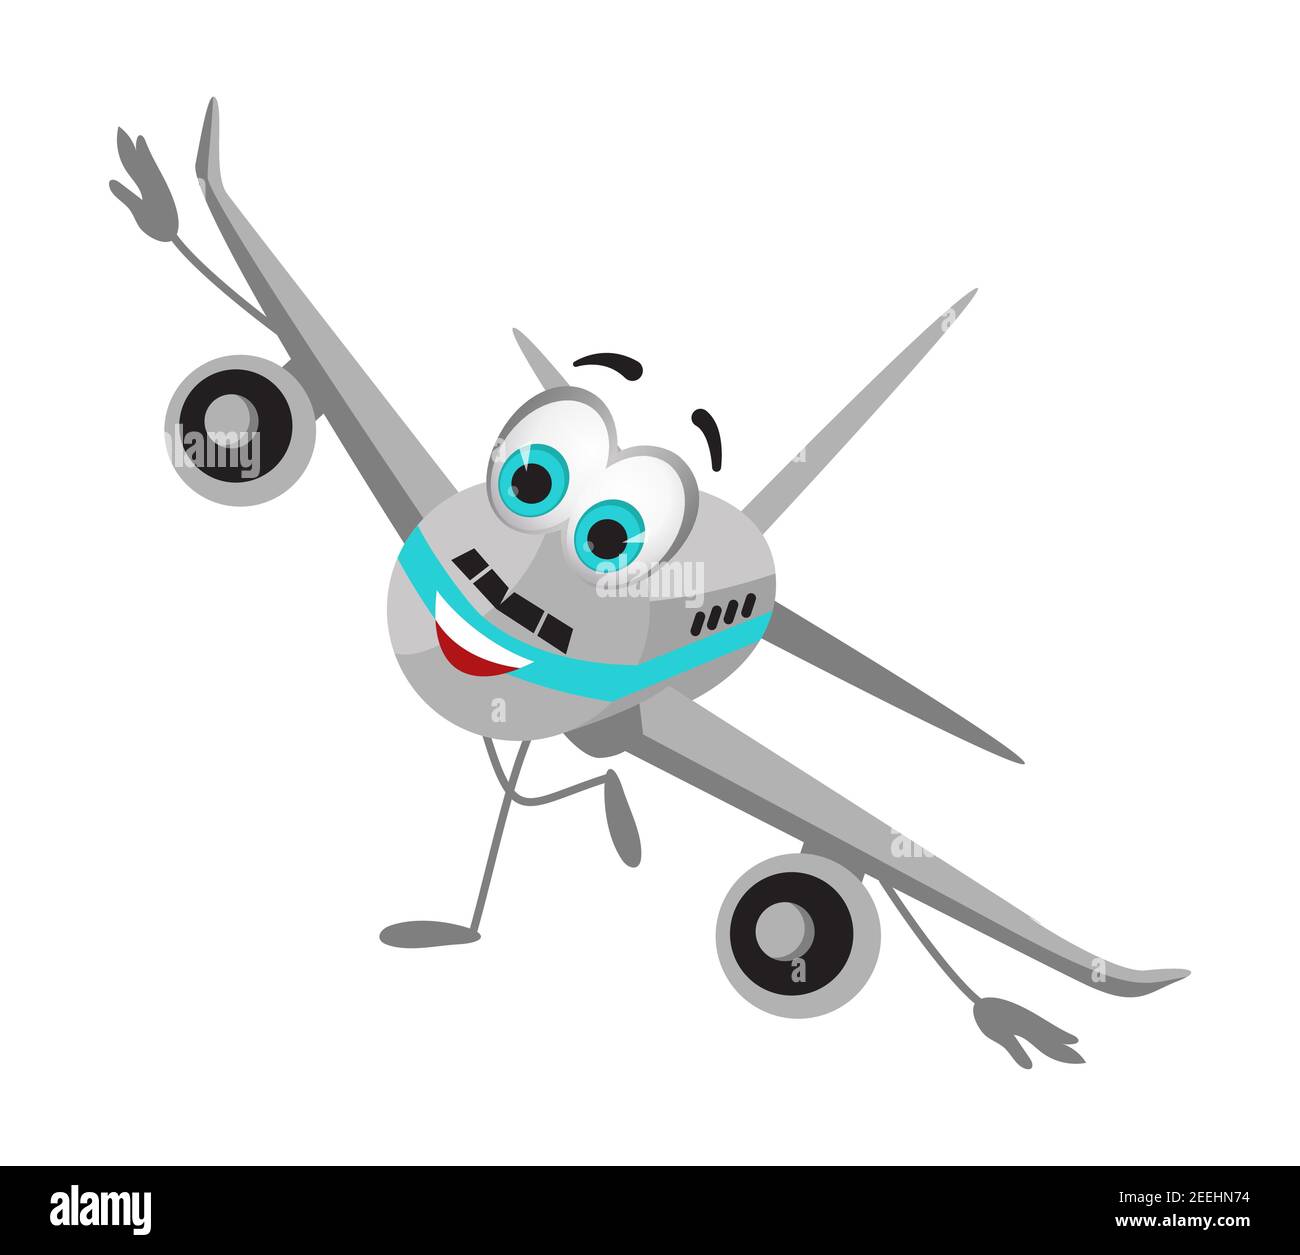 Colección de objetos divertidos de viaje: Avión divertido sobre fondo blanco, plano diseño ilustración vectorial Ilustración del Vector